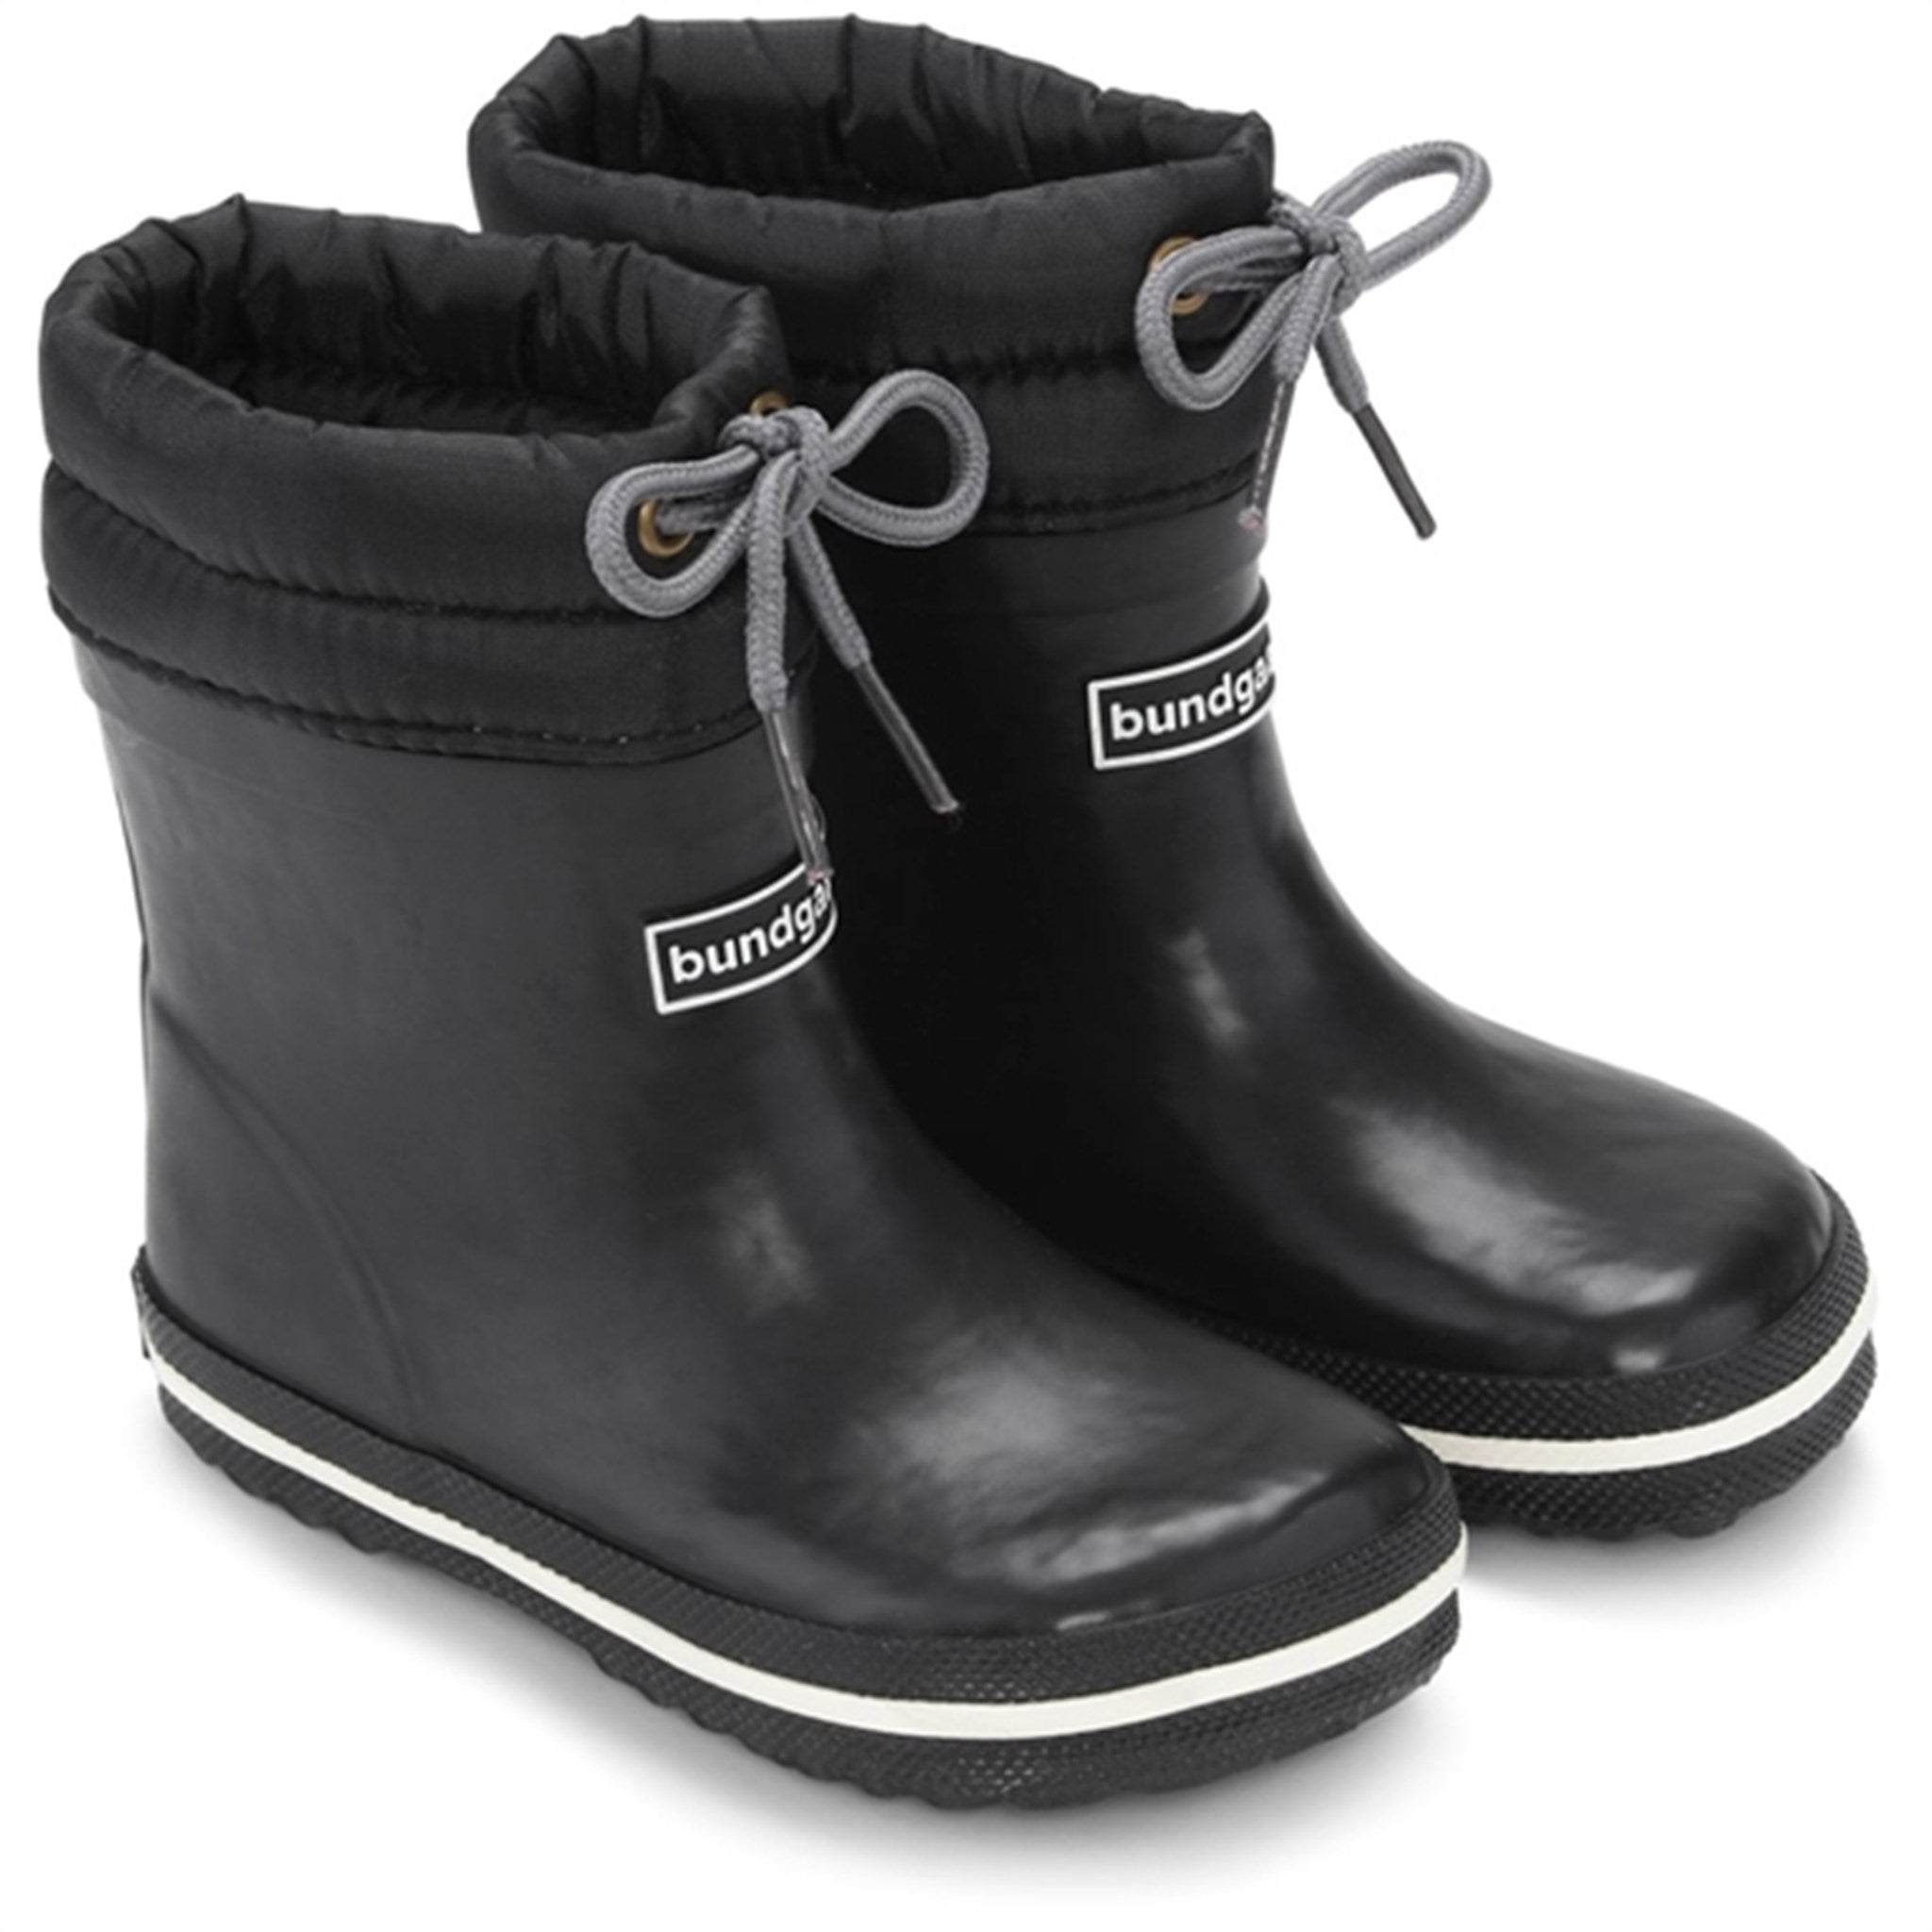 Bundgaard Cirro Low Warm Rubber Boots Black